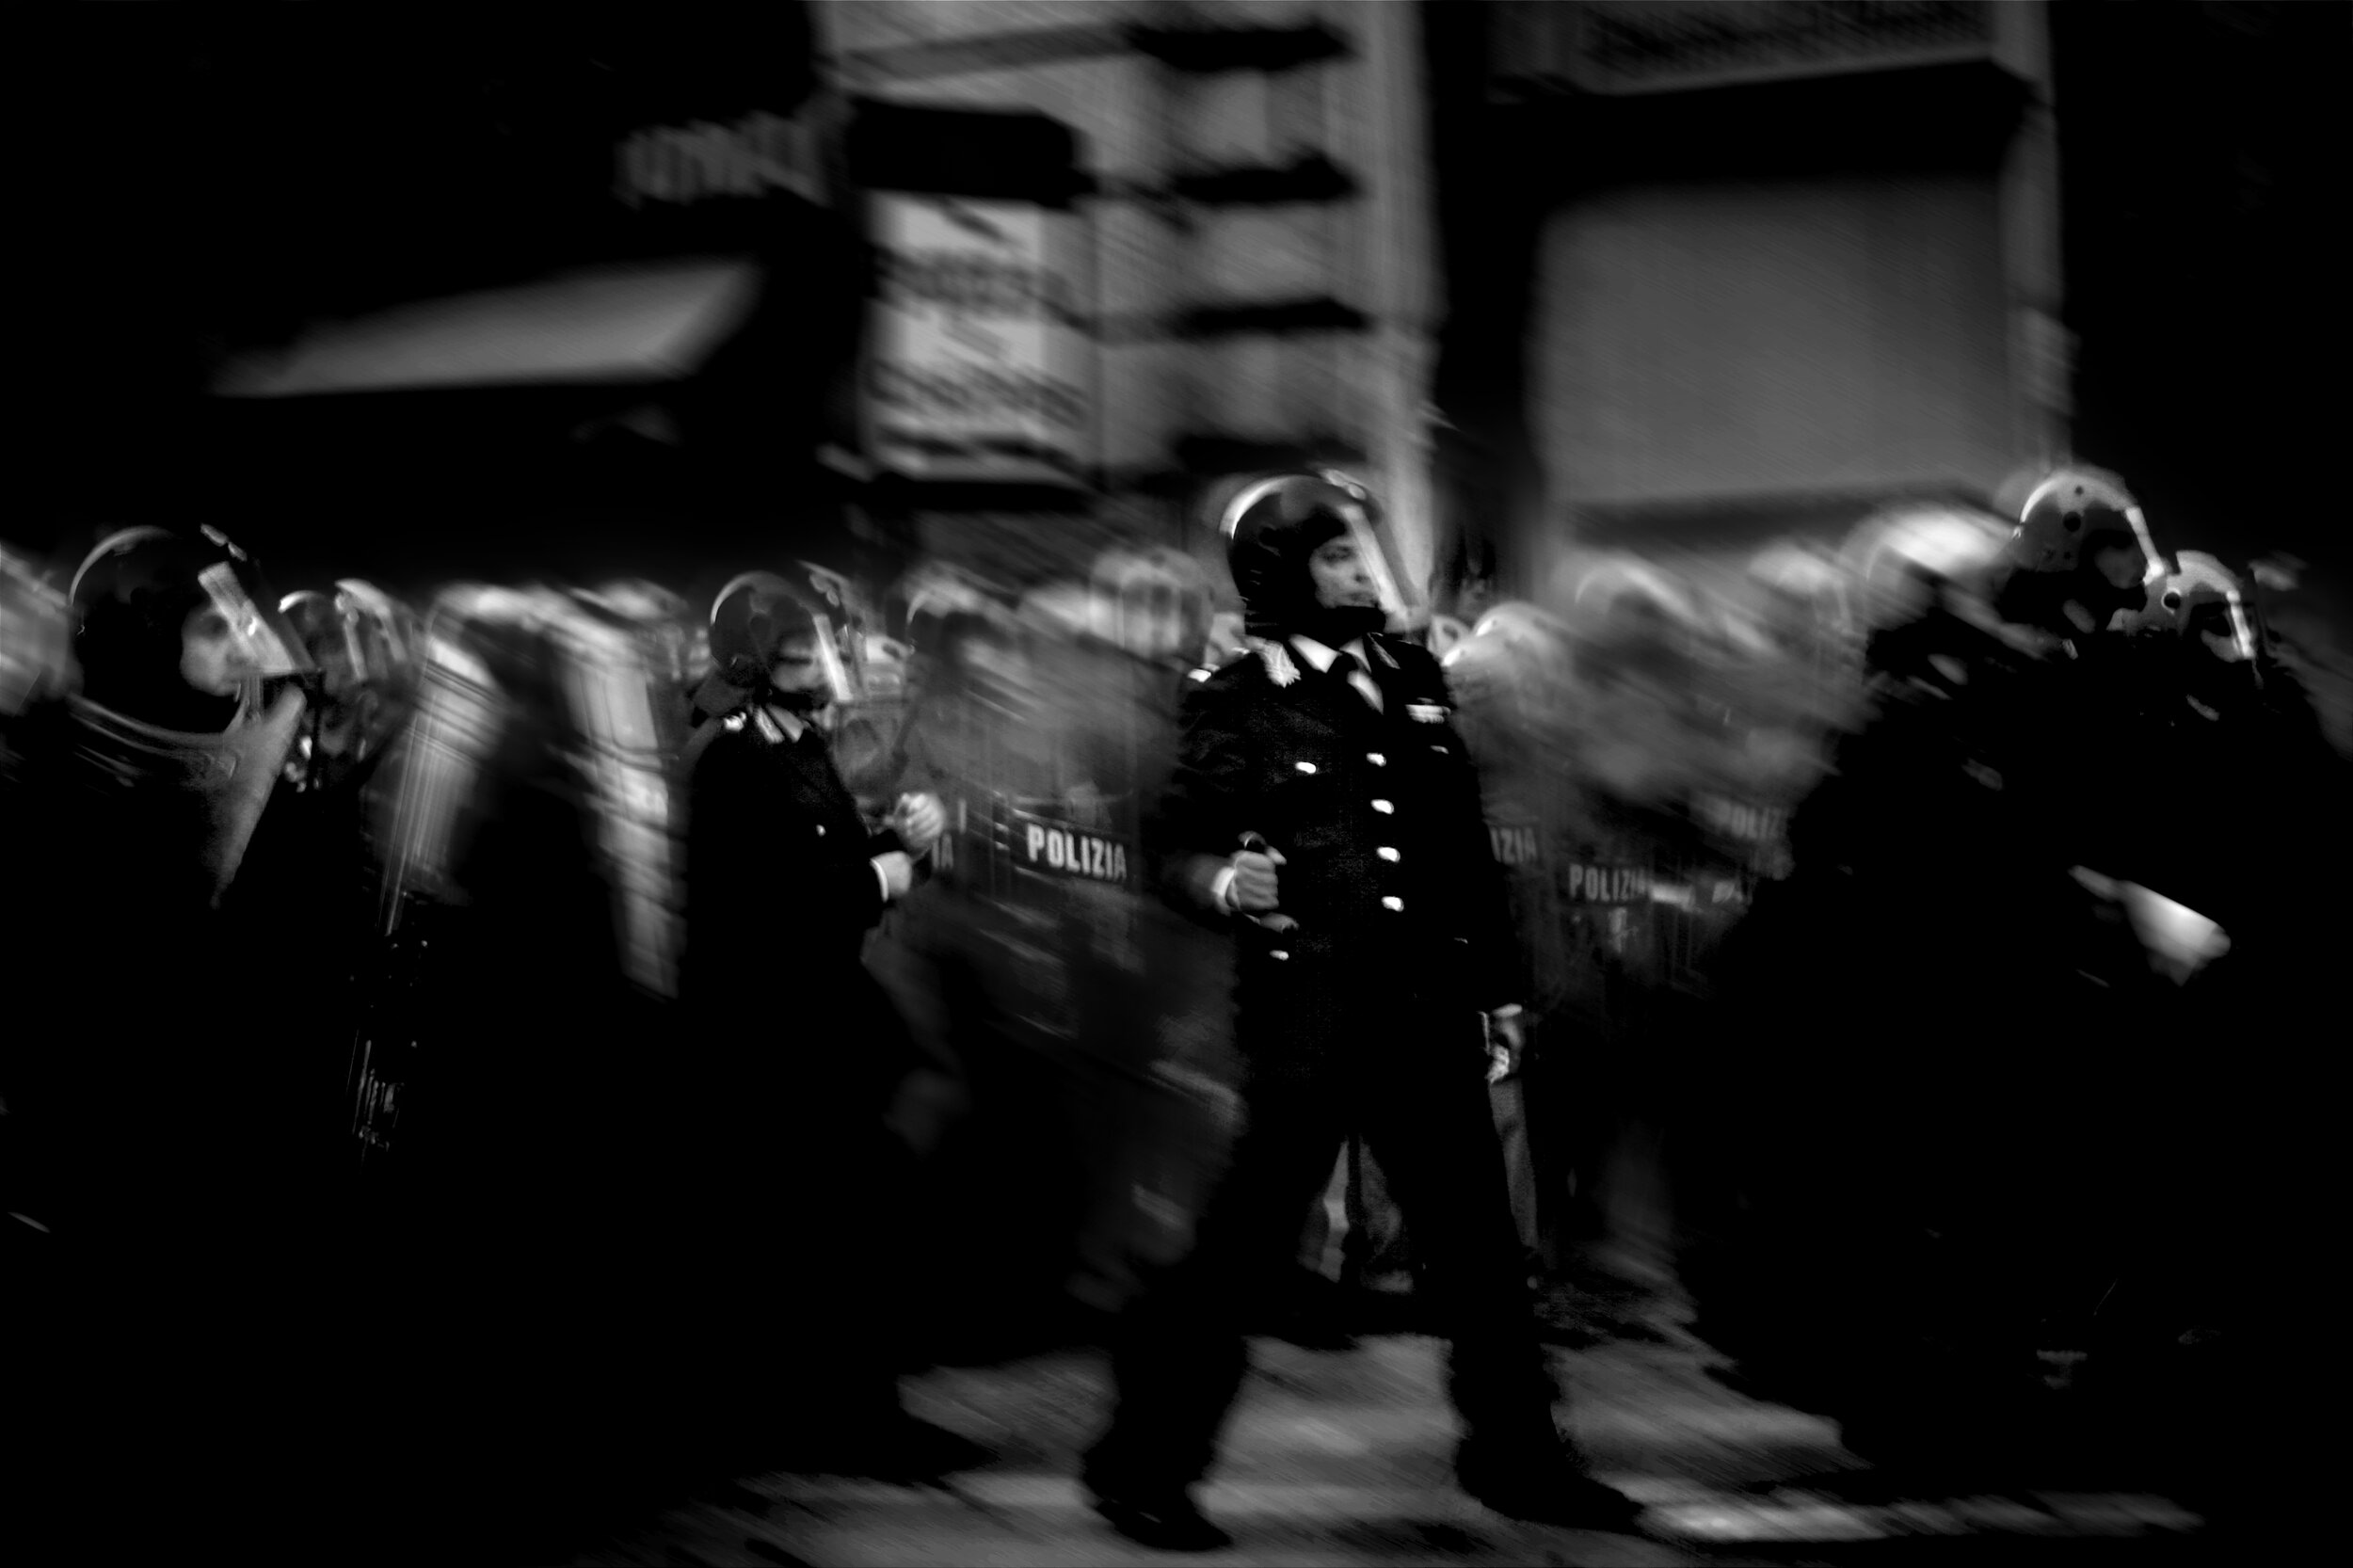  Rome, Italy  Police rush towards protestors.   heavy post-production  